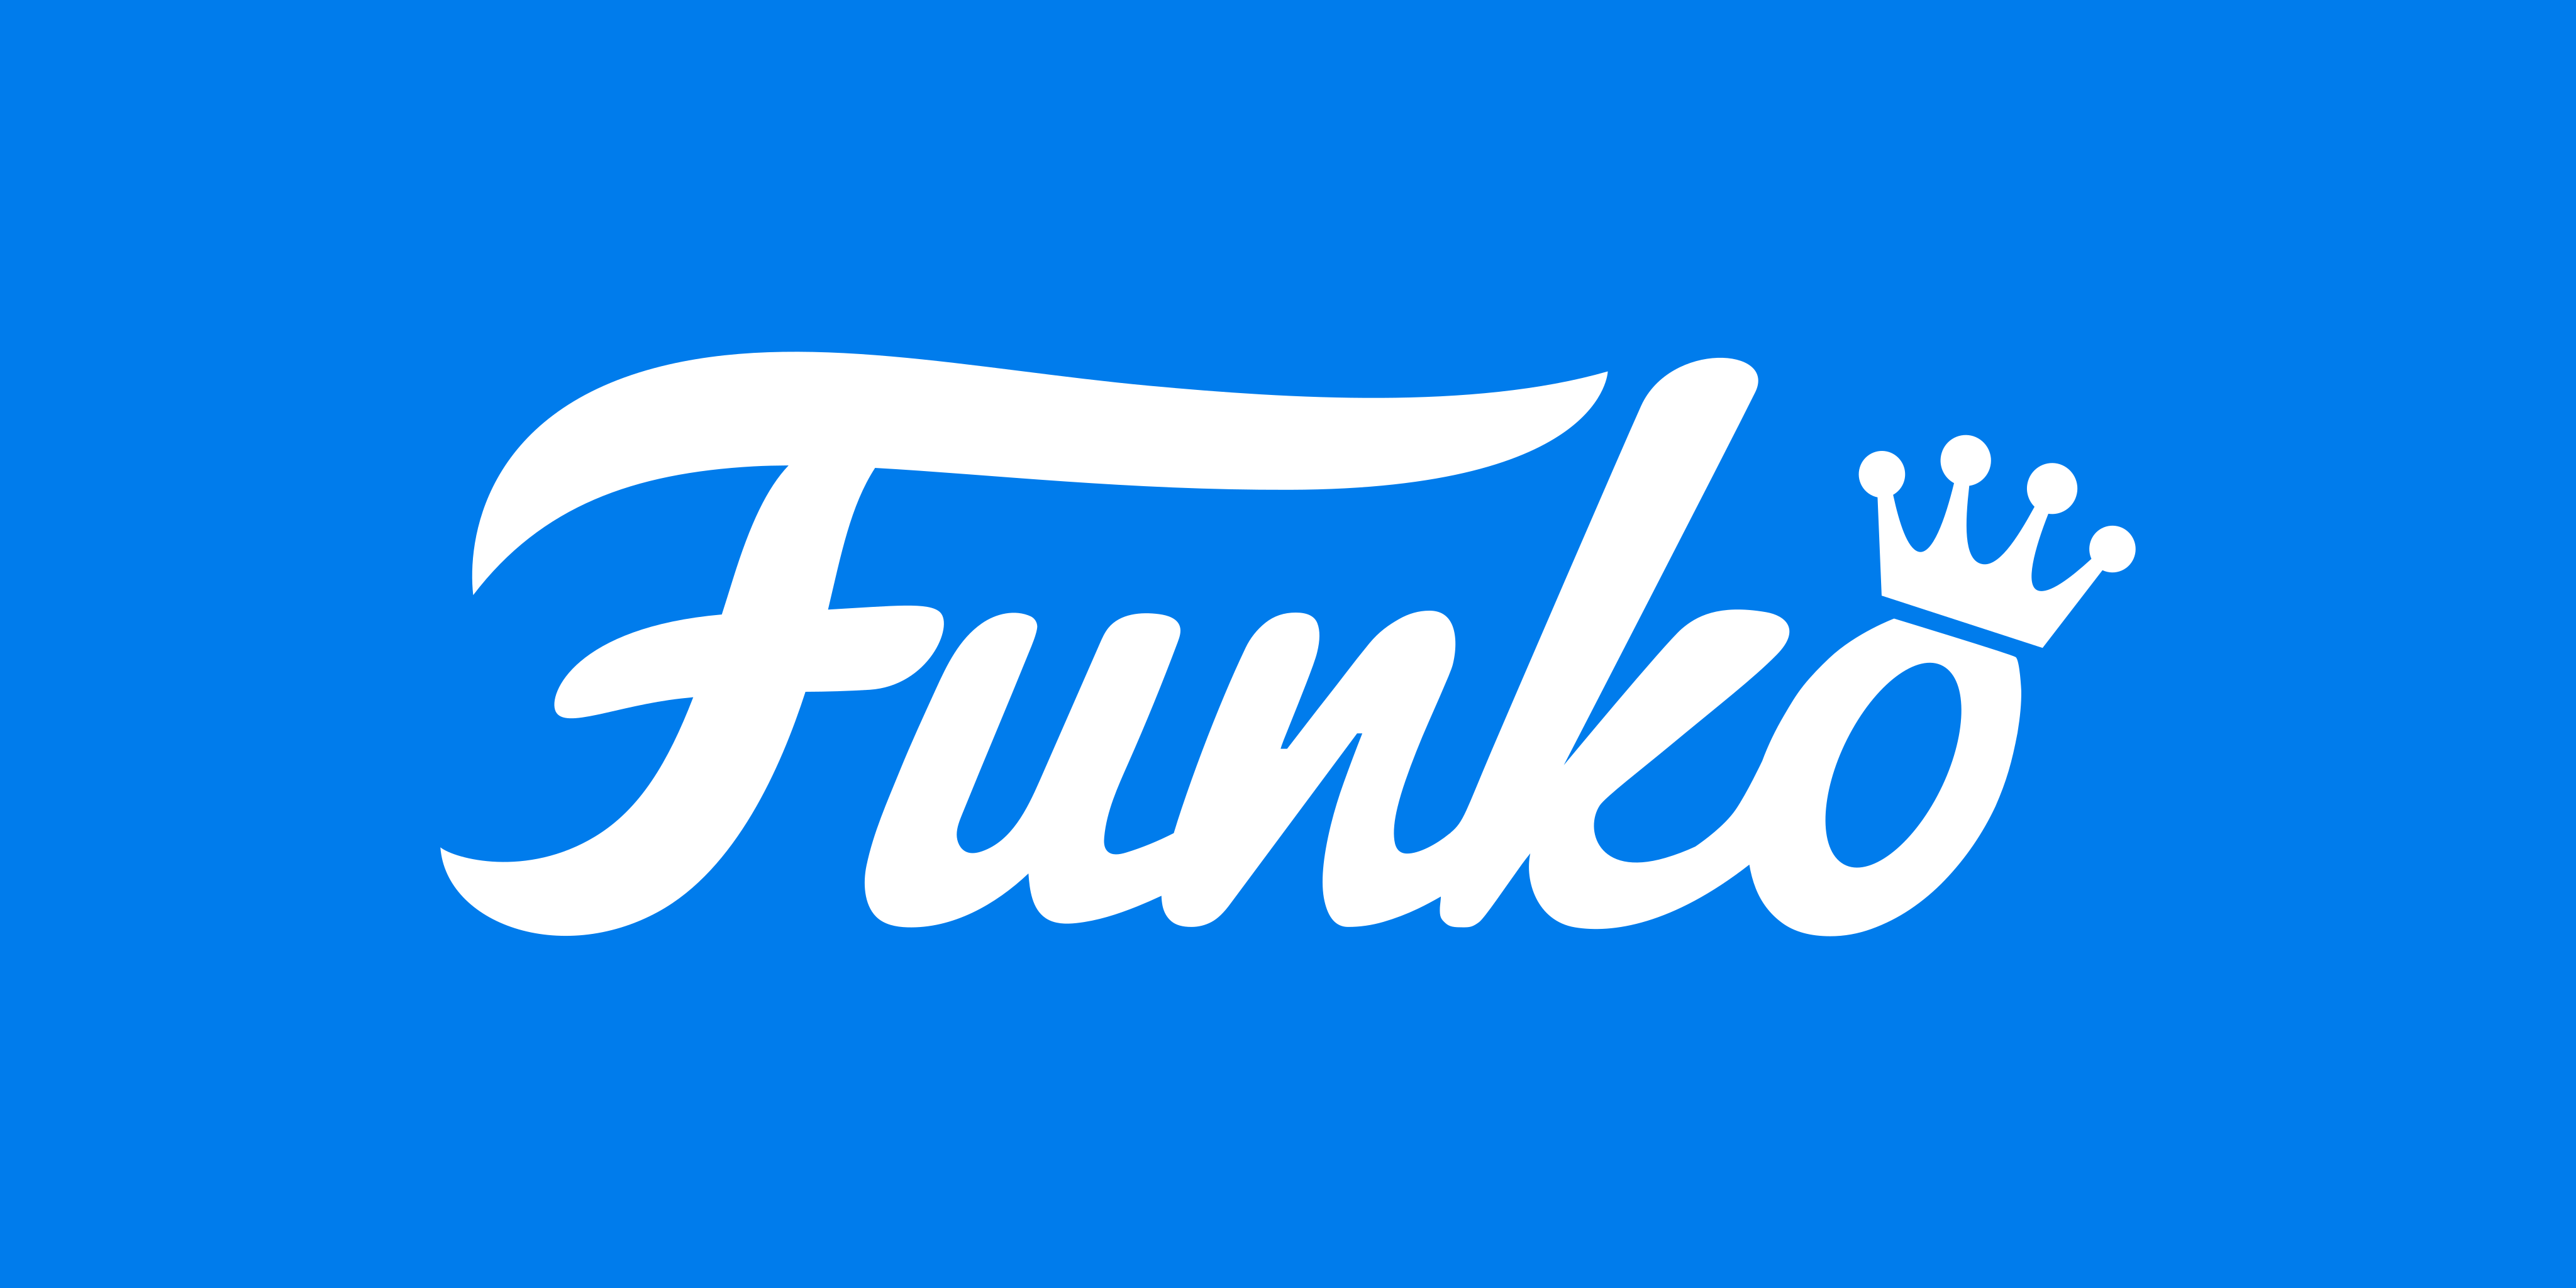 გამოიყენება Funko-ს ლოგოს საჩვენებლად